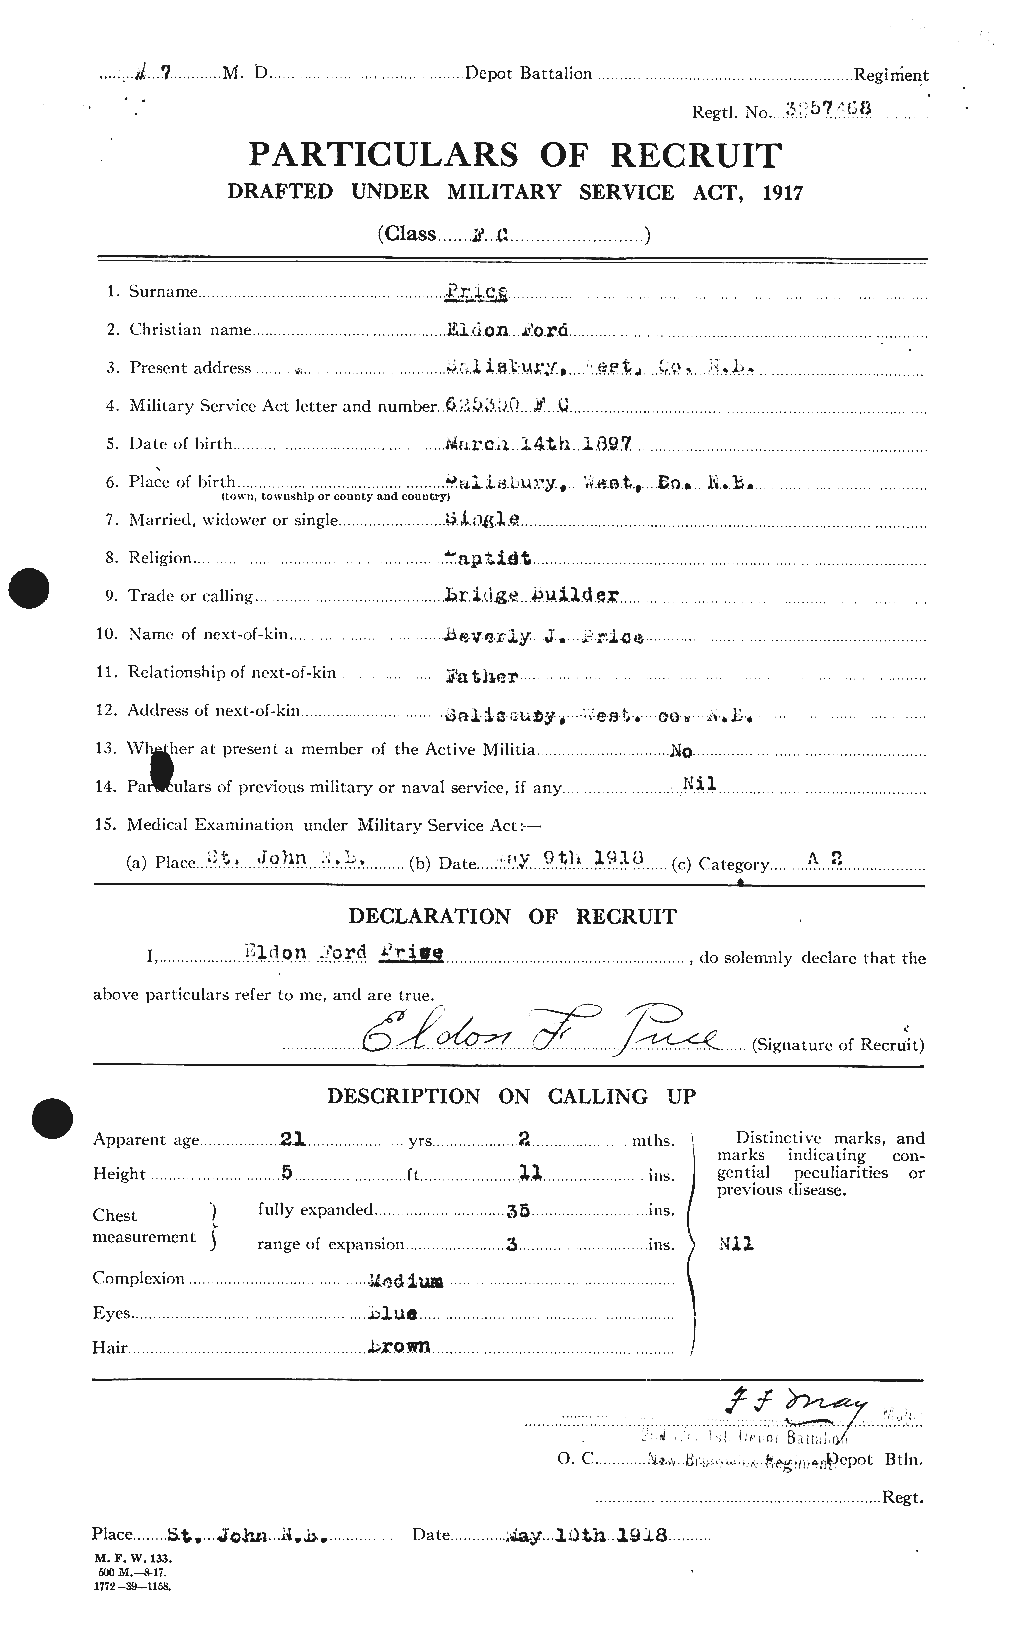 Dossiers du Personnel de la Première Guerre mondiale - CEC 587026a